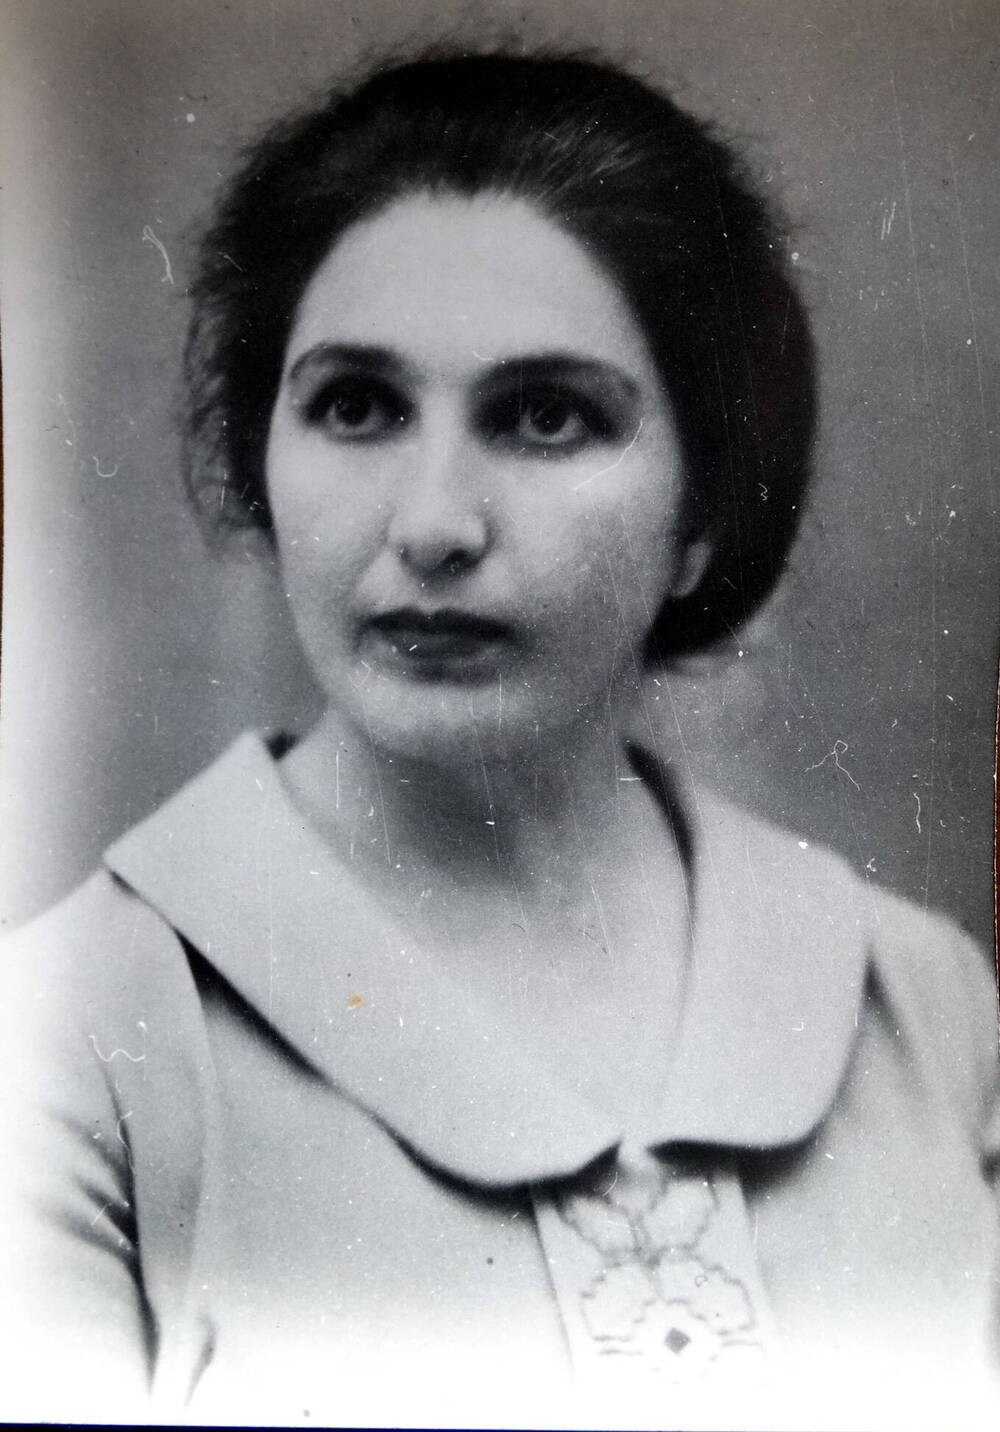 Фото. Орзета Алихановна Бекузарова - актриса Осетинского драмтеатра, 1960-е г.г.